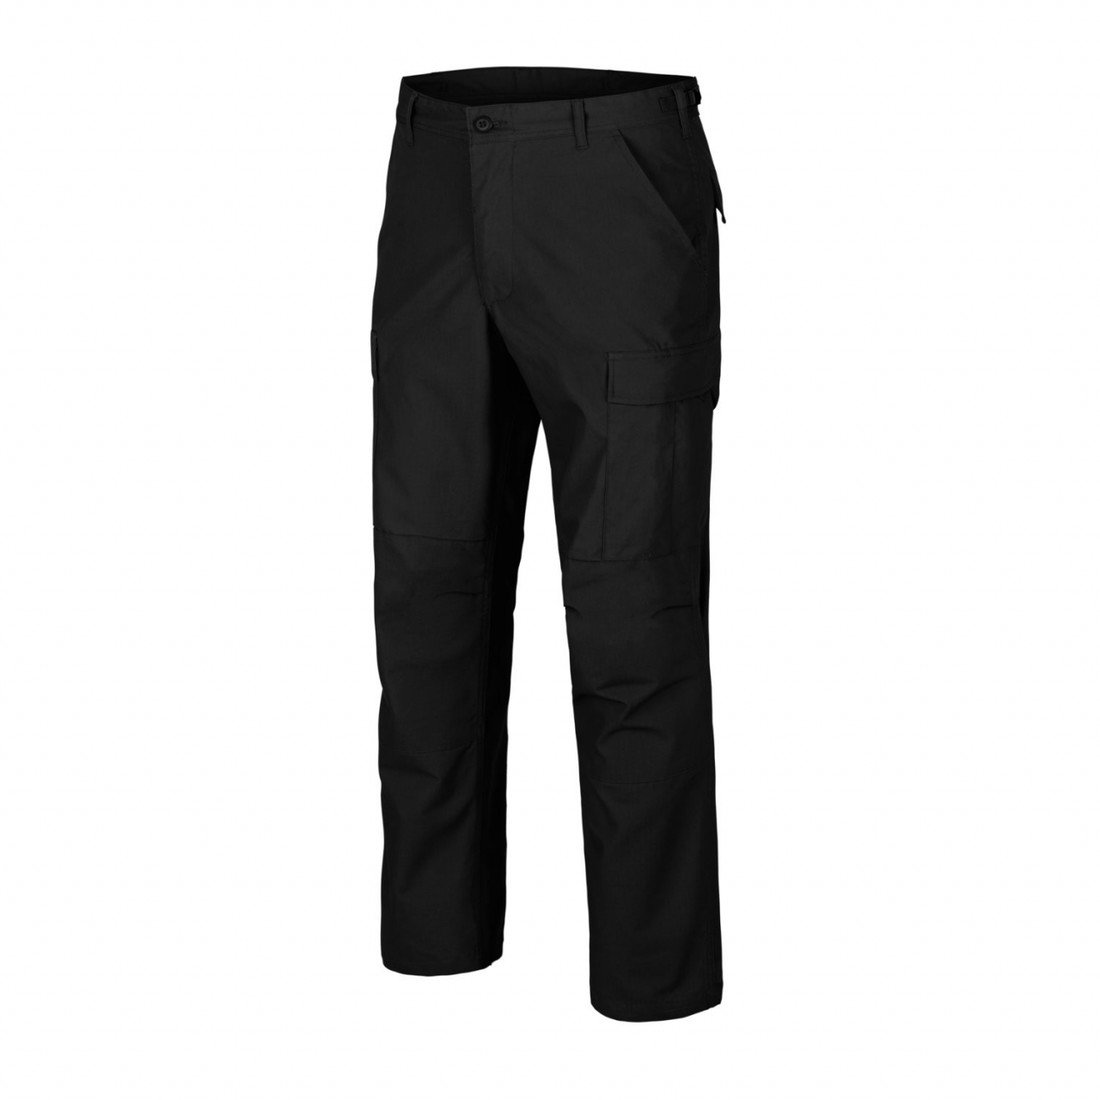 Kalhoty Helikon BDU Pants Poly Ripstop - černé, XS